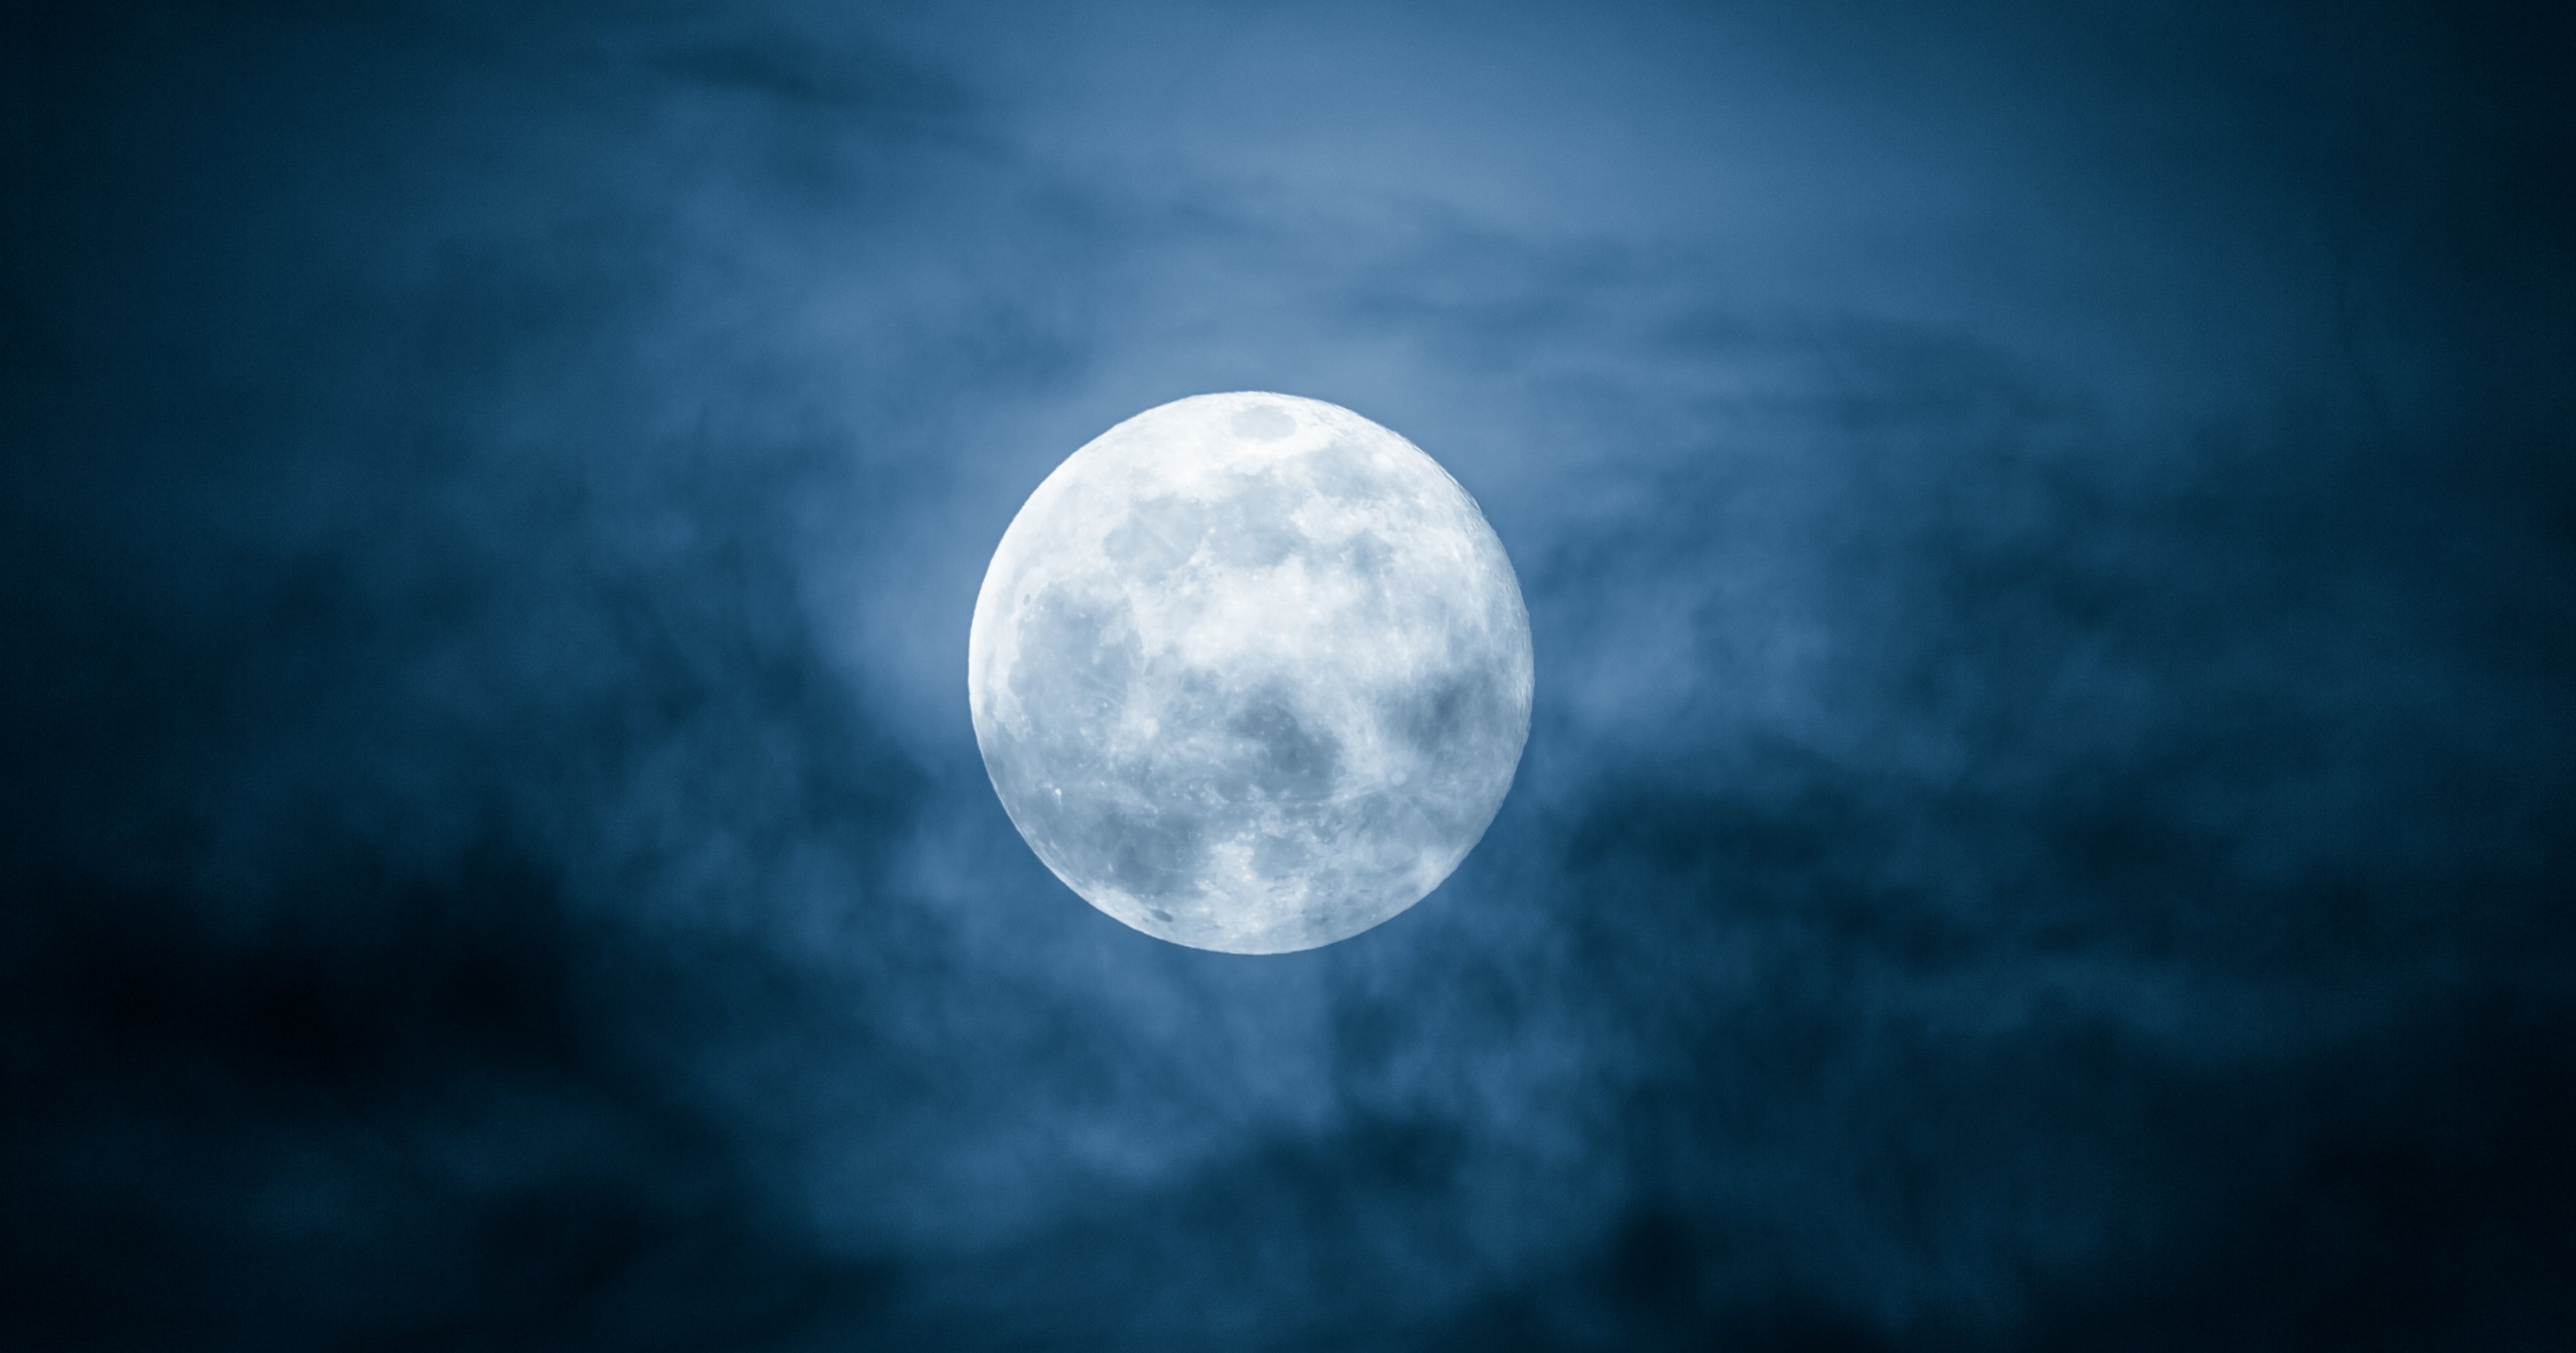 Физическое явление луны. Полнолуние. Голубая Луна. Синяя Луна. Фото синей Луны.